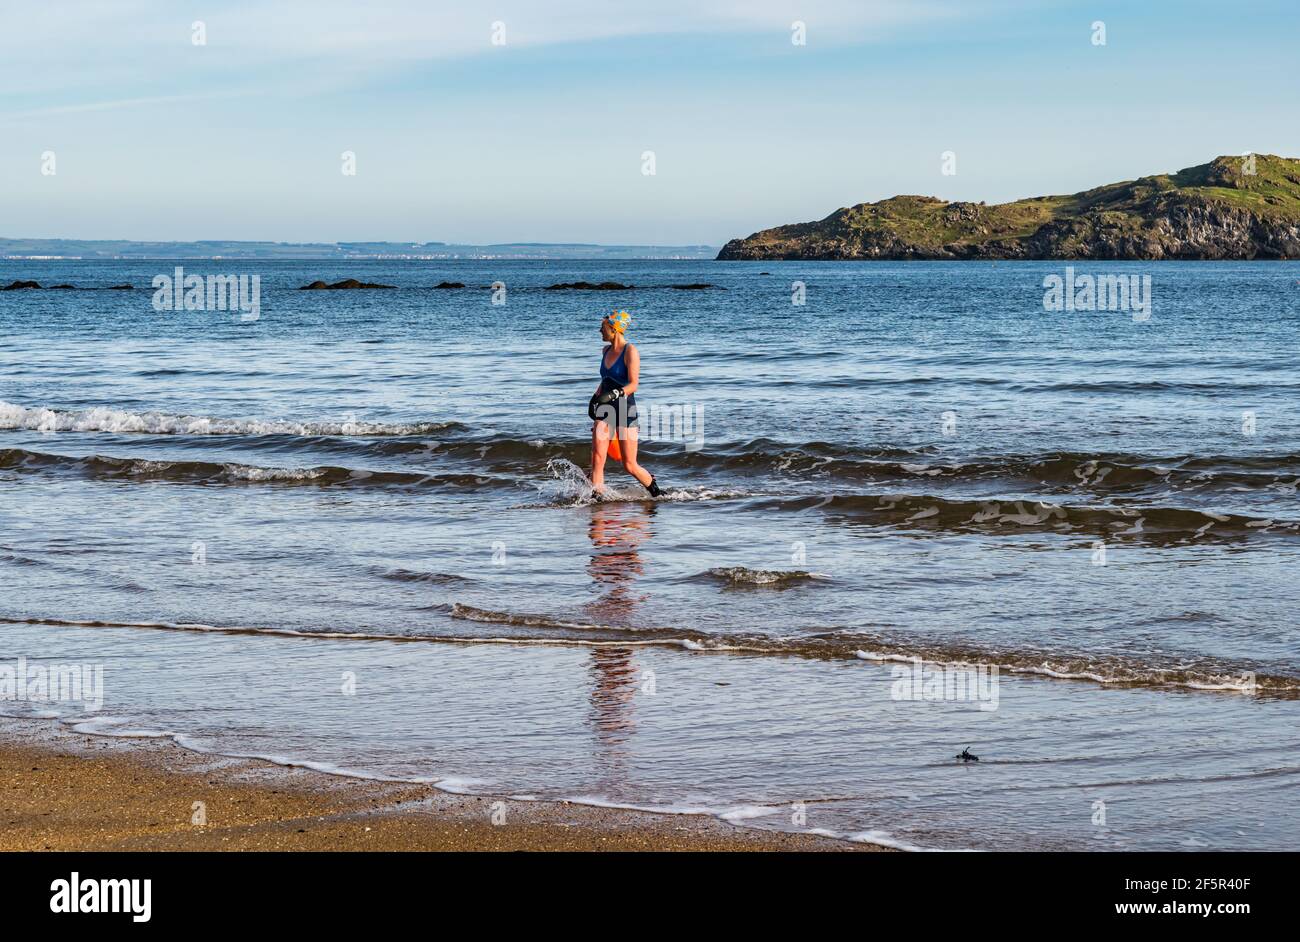 Wildwasser- oder Freiwasser-Schwimmerin in einem Badeanzug mit Auftriebhilfe aus Firth of Forth Sea, North Berwick, East Lothian, Schottland, Großbritannien Stockfoto